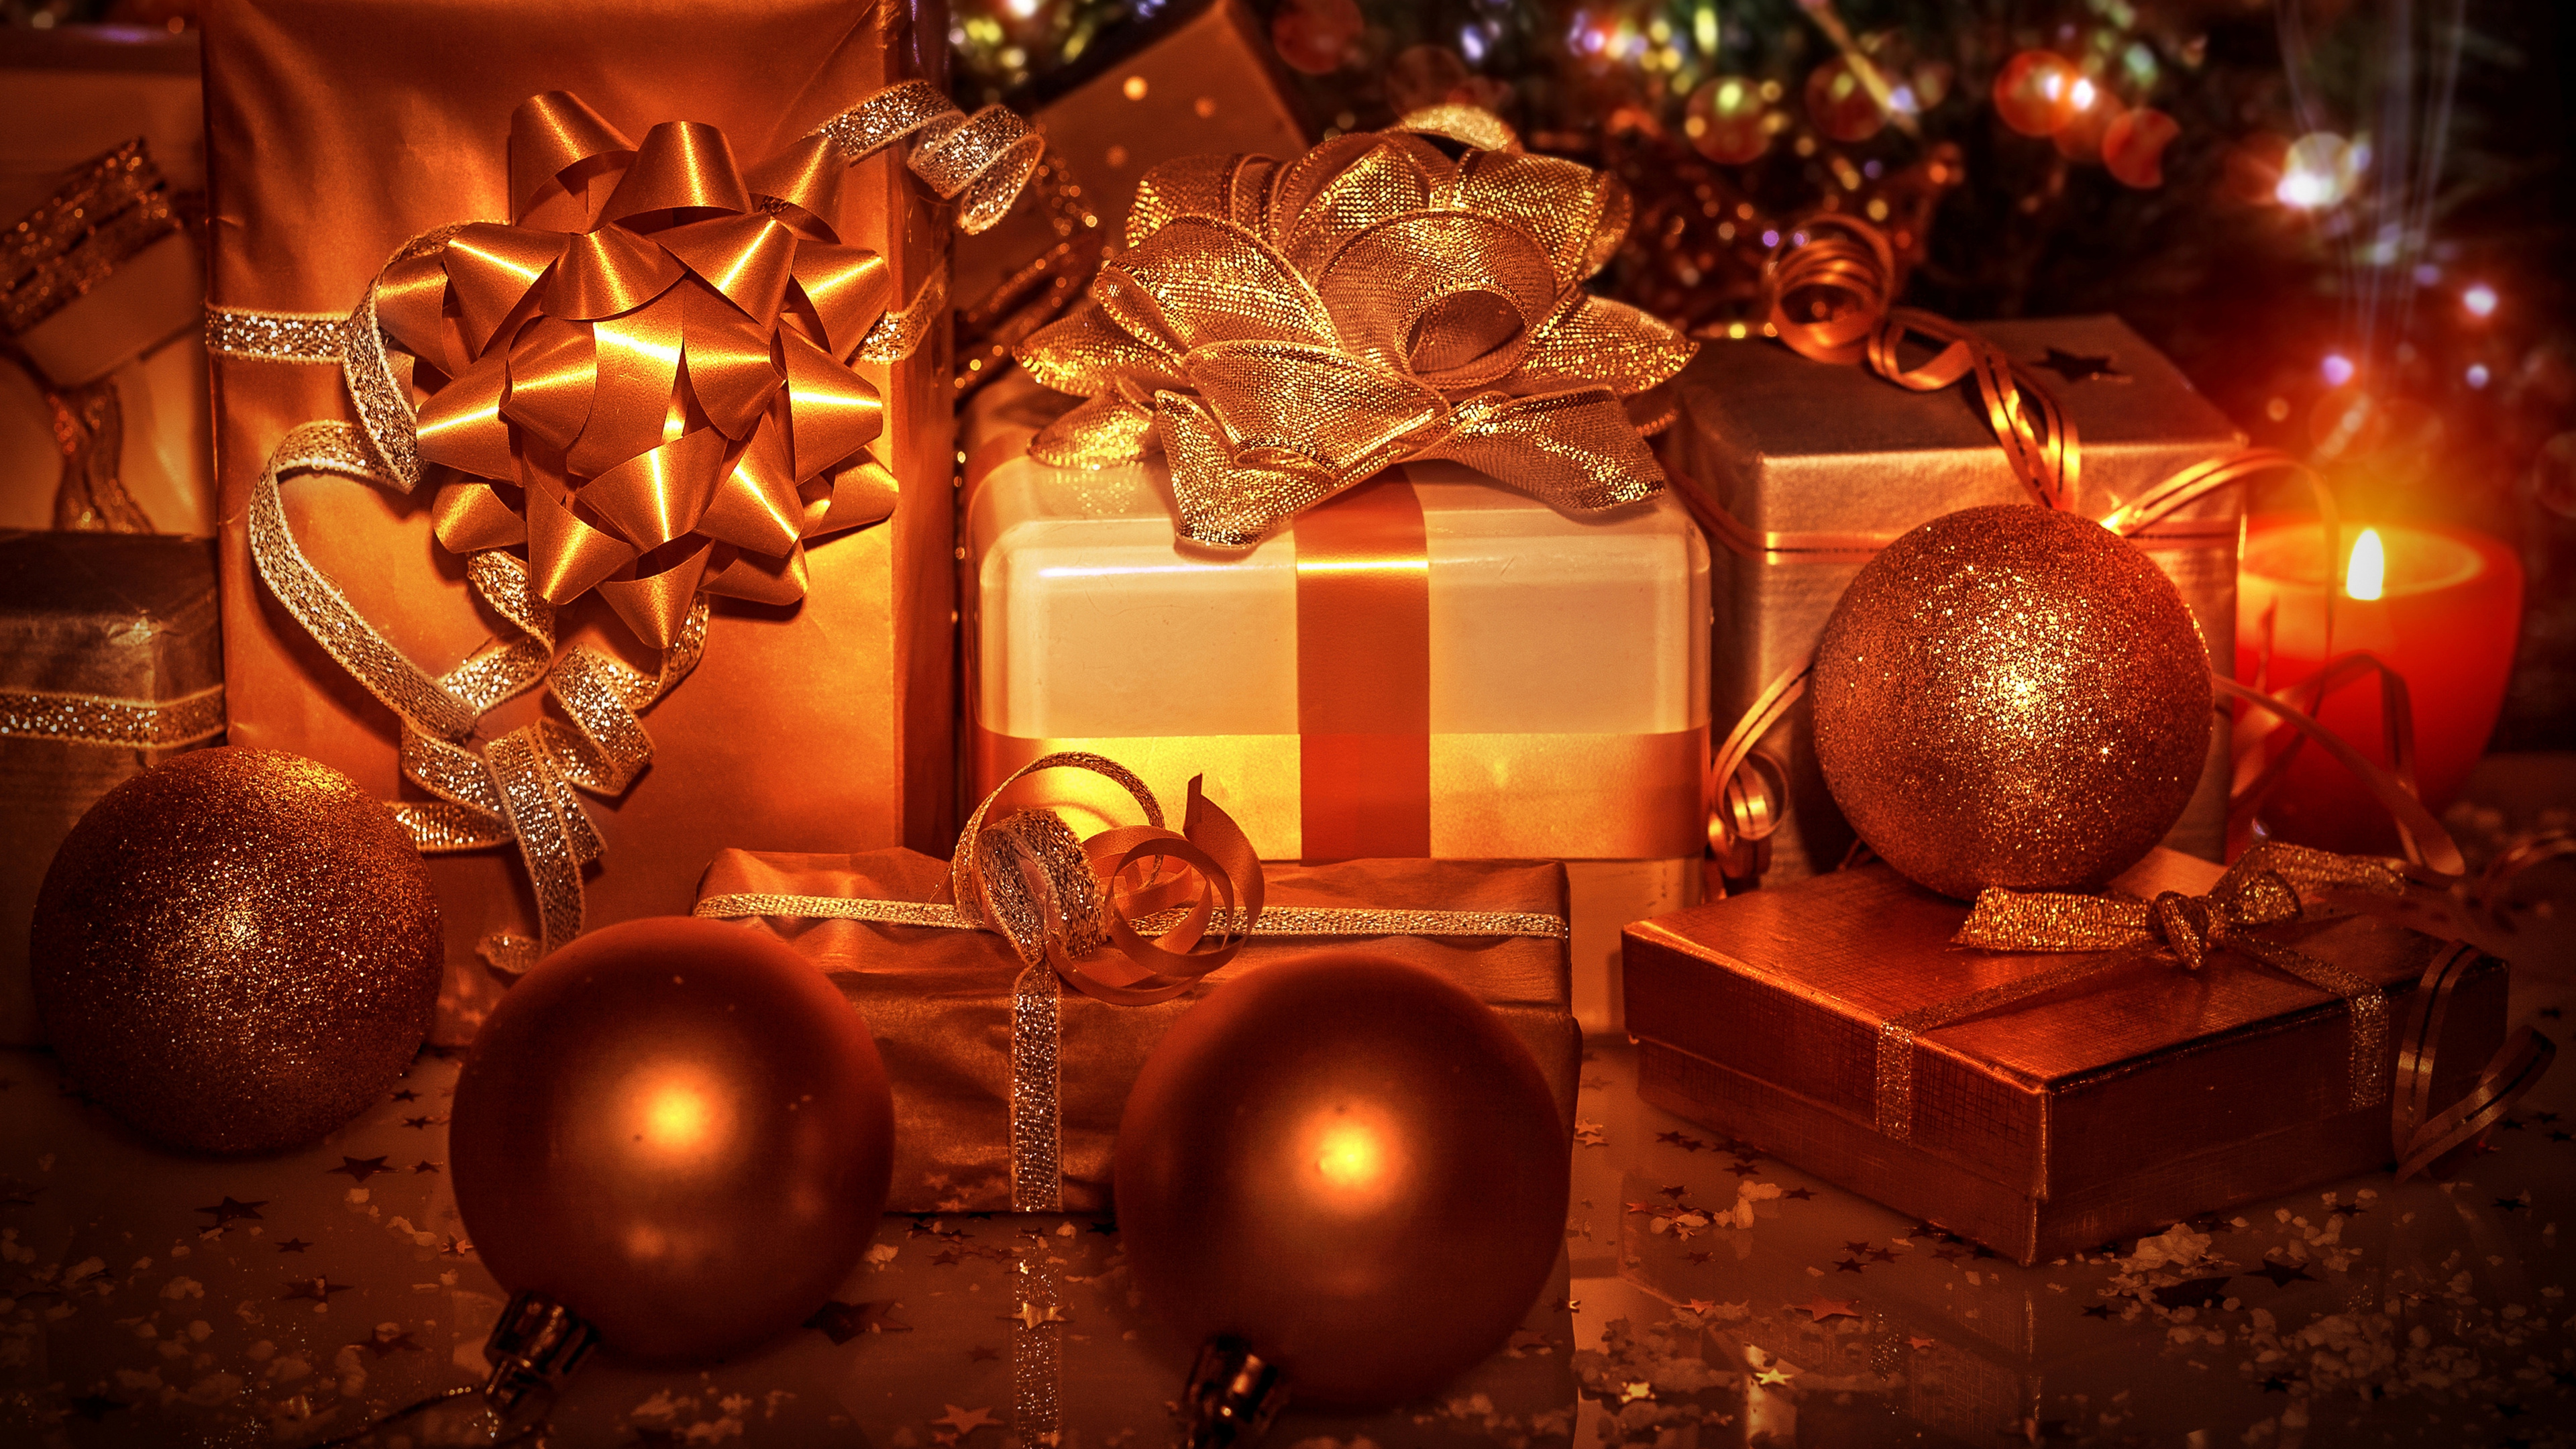 圣诞节那天, 圣诞节的装饰品, 圣诞树, 新的一年, 圣诞装饰 壁纸 3840x2160 允许